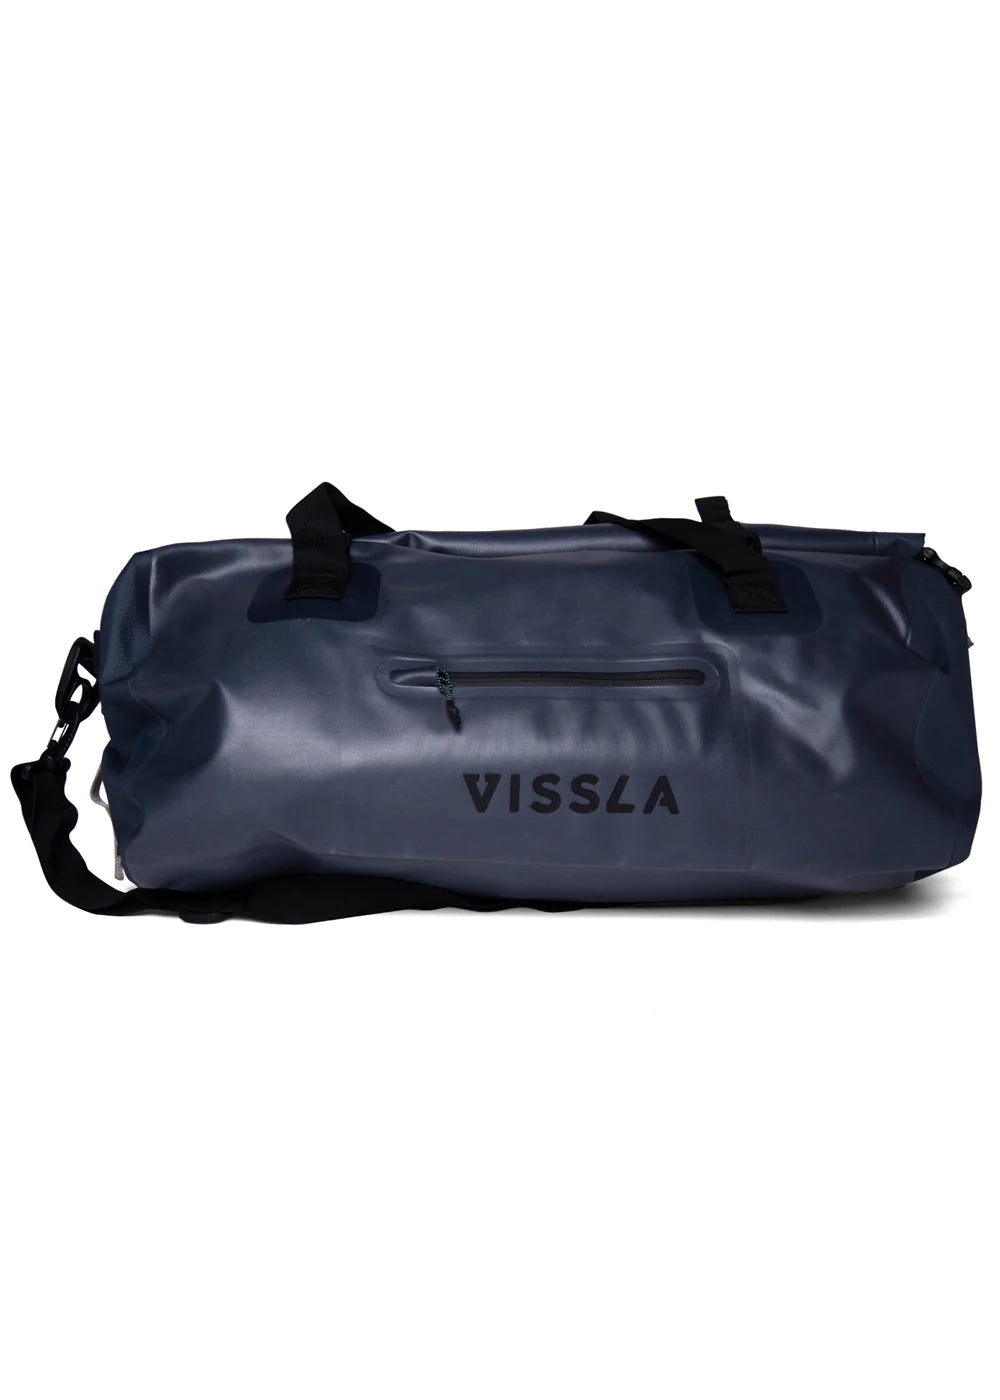 Vissla 7 Seas 40L Dry Duffle Bag - AST Bag